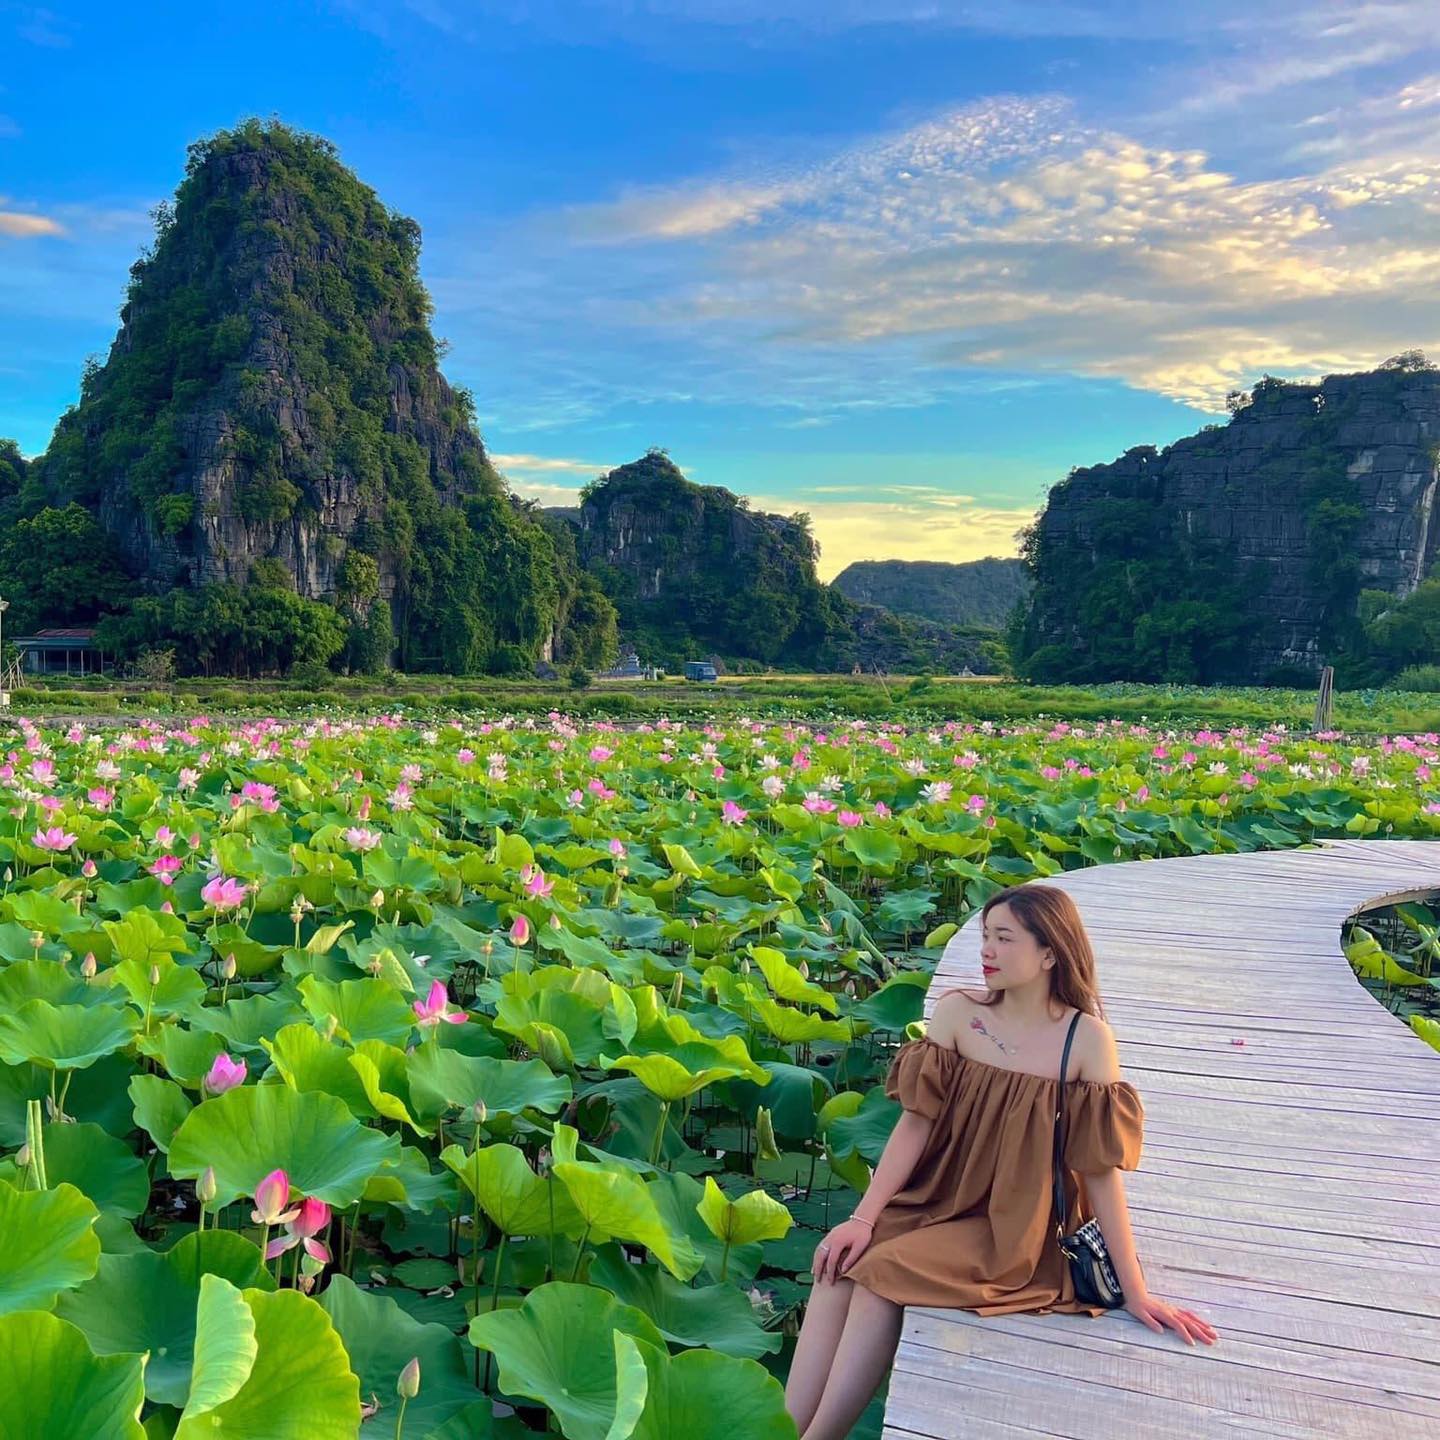 Hồ sen là một trong những địa điểm du lịch nổi tiếng ở Việt Nam với cảnh quan tuyệt đẹp của hàng chục ngàn bông sen nở rộ trên mặt nước. Hãy cùng chiêm ngưỡng bức tranh thiên nhiên tuyệt vời này và thưởng ngoạn những trải nghiệm độc đáo tại hồ sen!